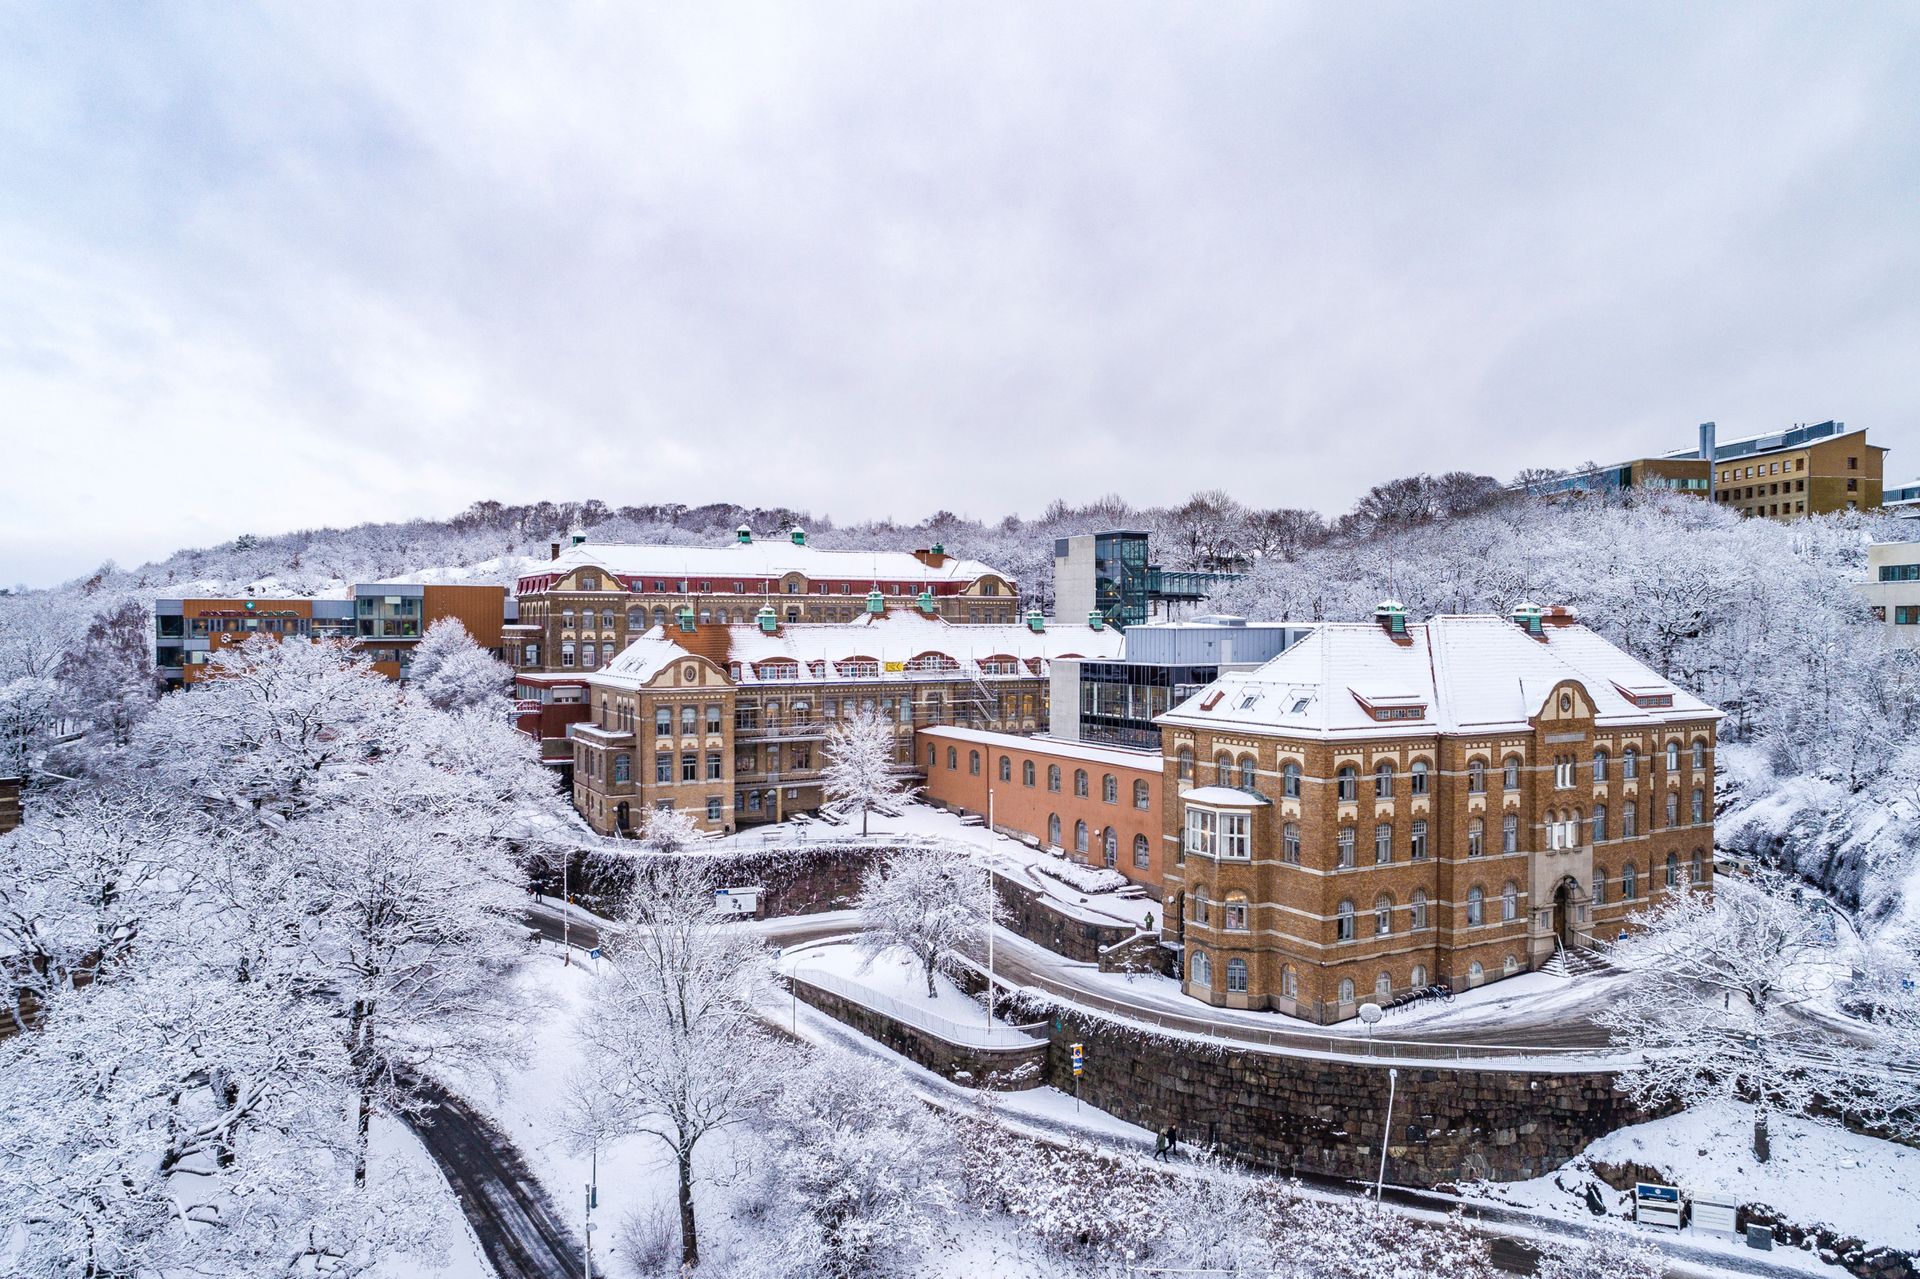 An outside view of Sahlgrenska University Hospital during winter.